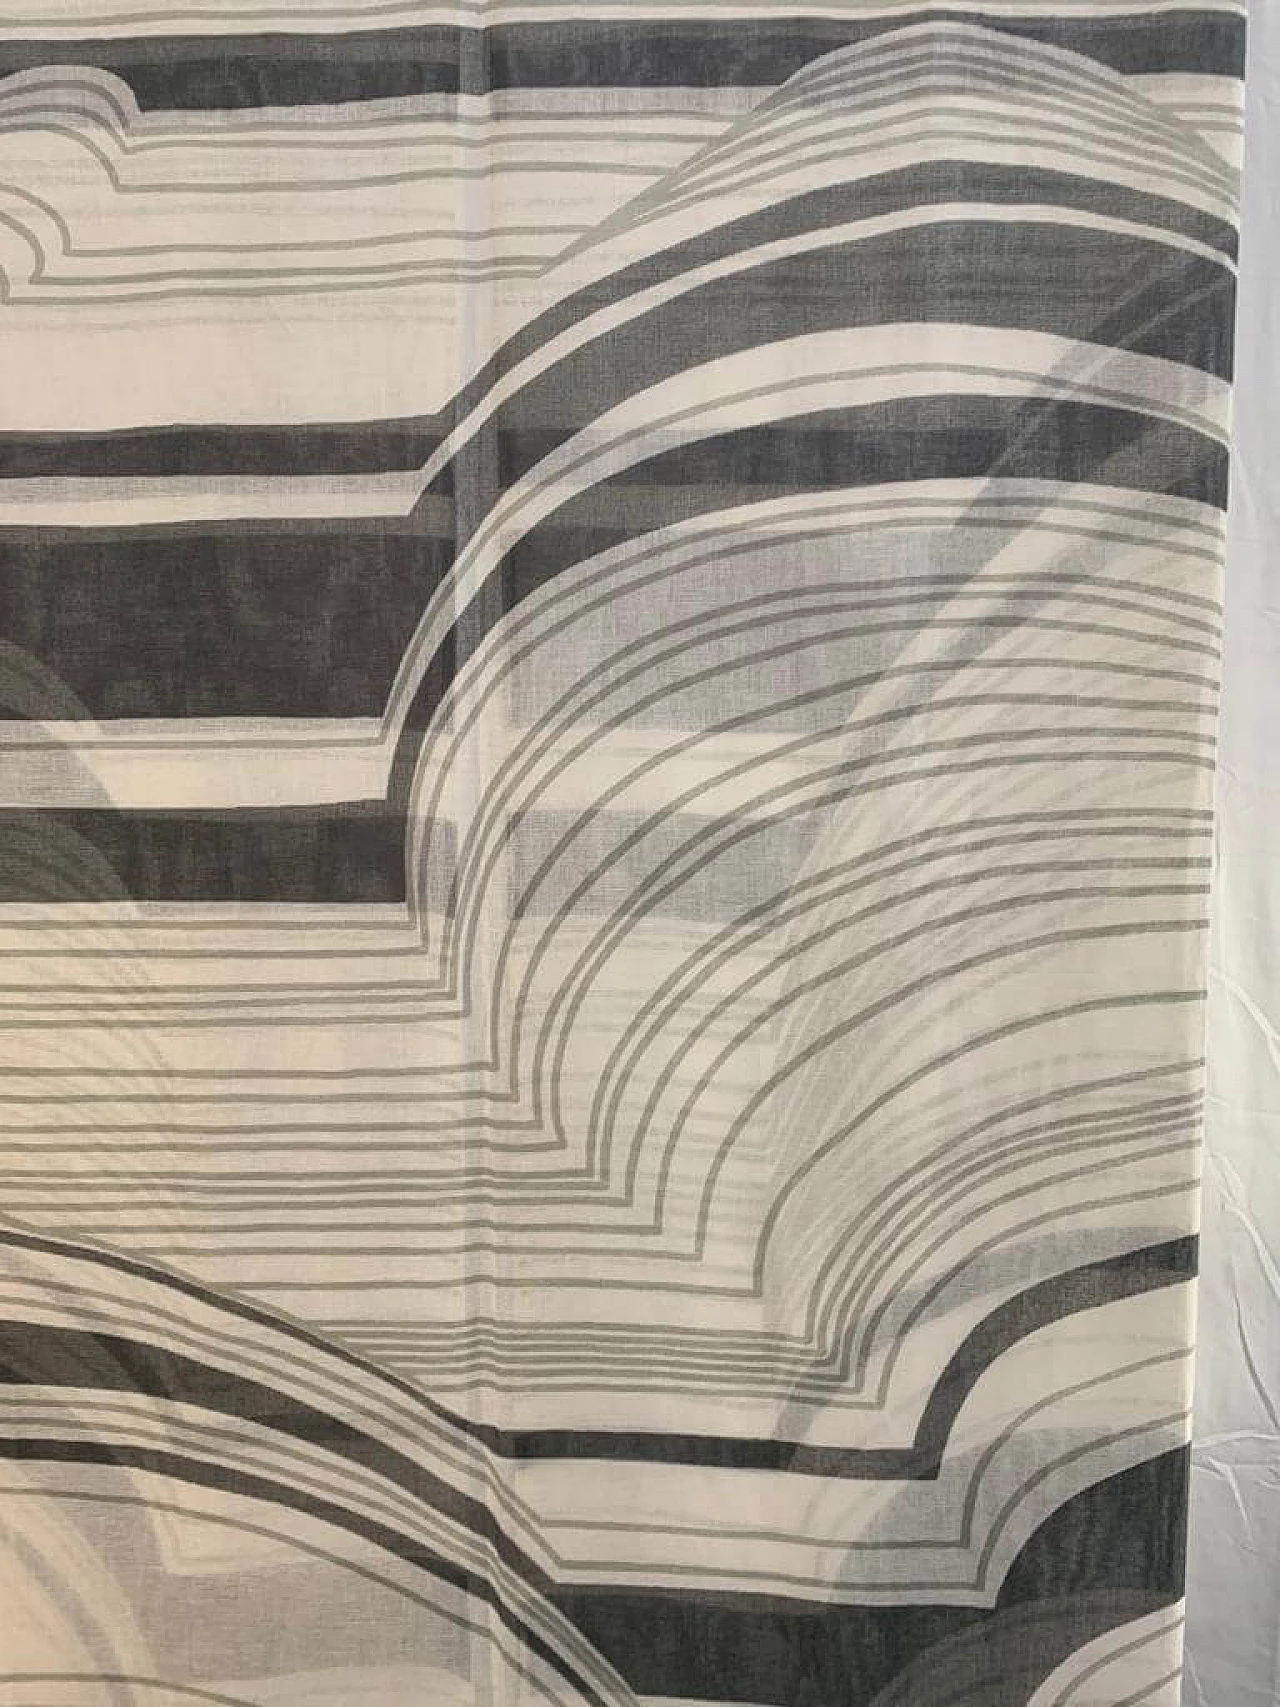 Fabric divider by Silvio Coppola for Tessitura di Mompiano, 1970s 1139334